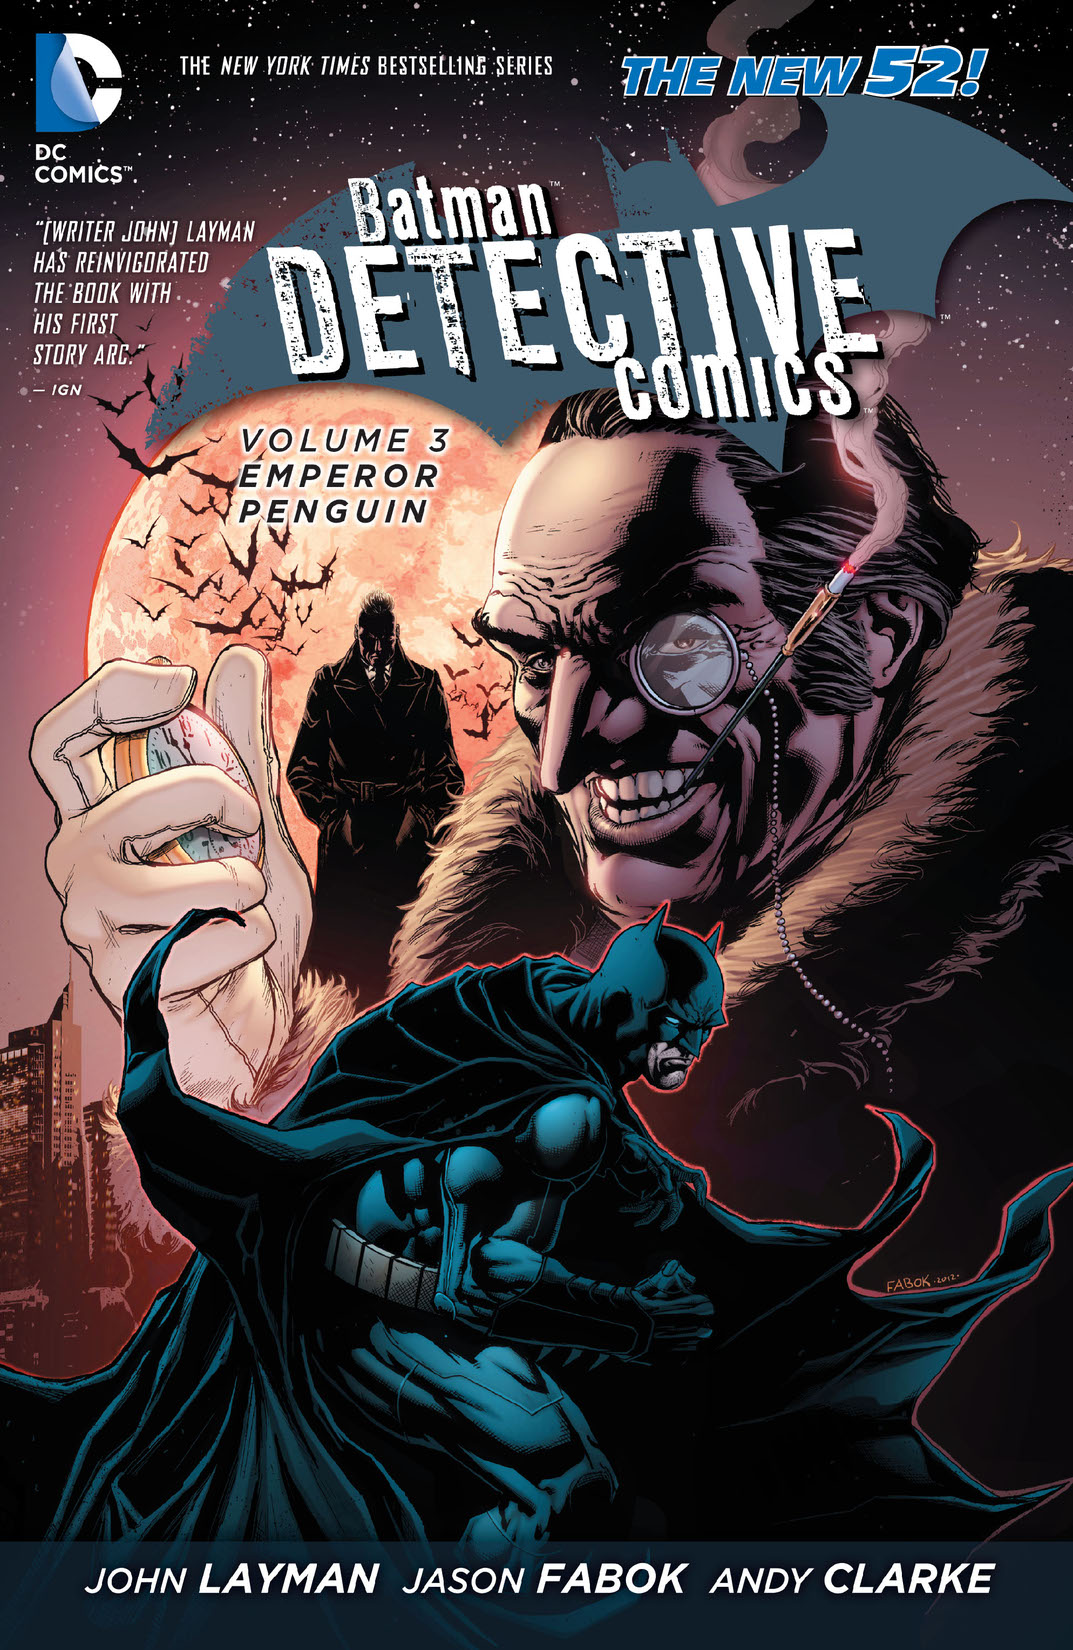 Batman: Detective Comics Vol. 3: Emperor Penguin preview images